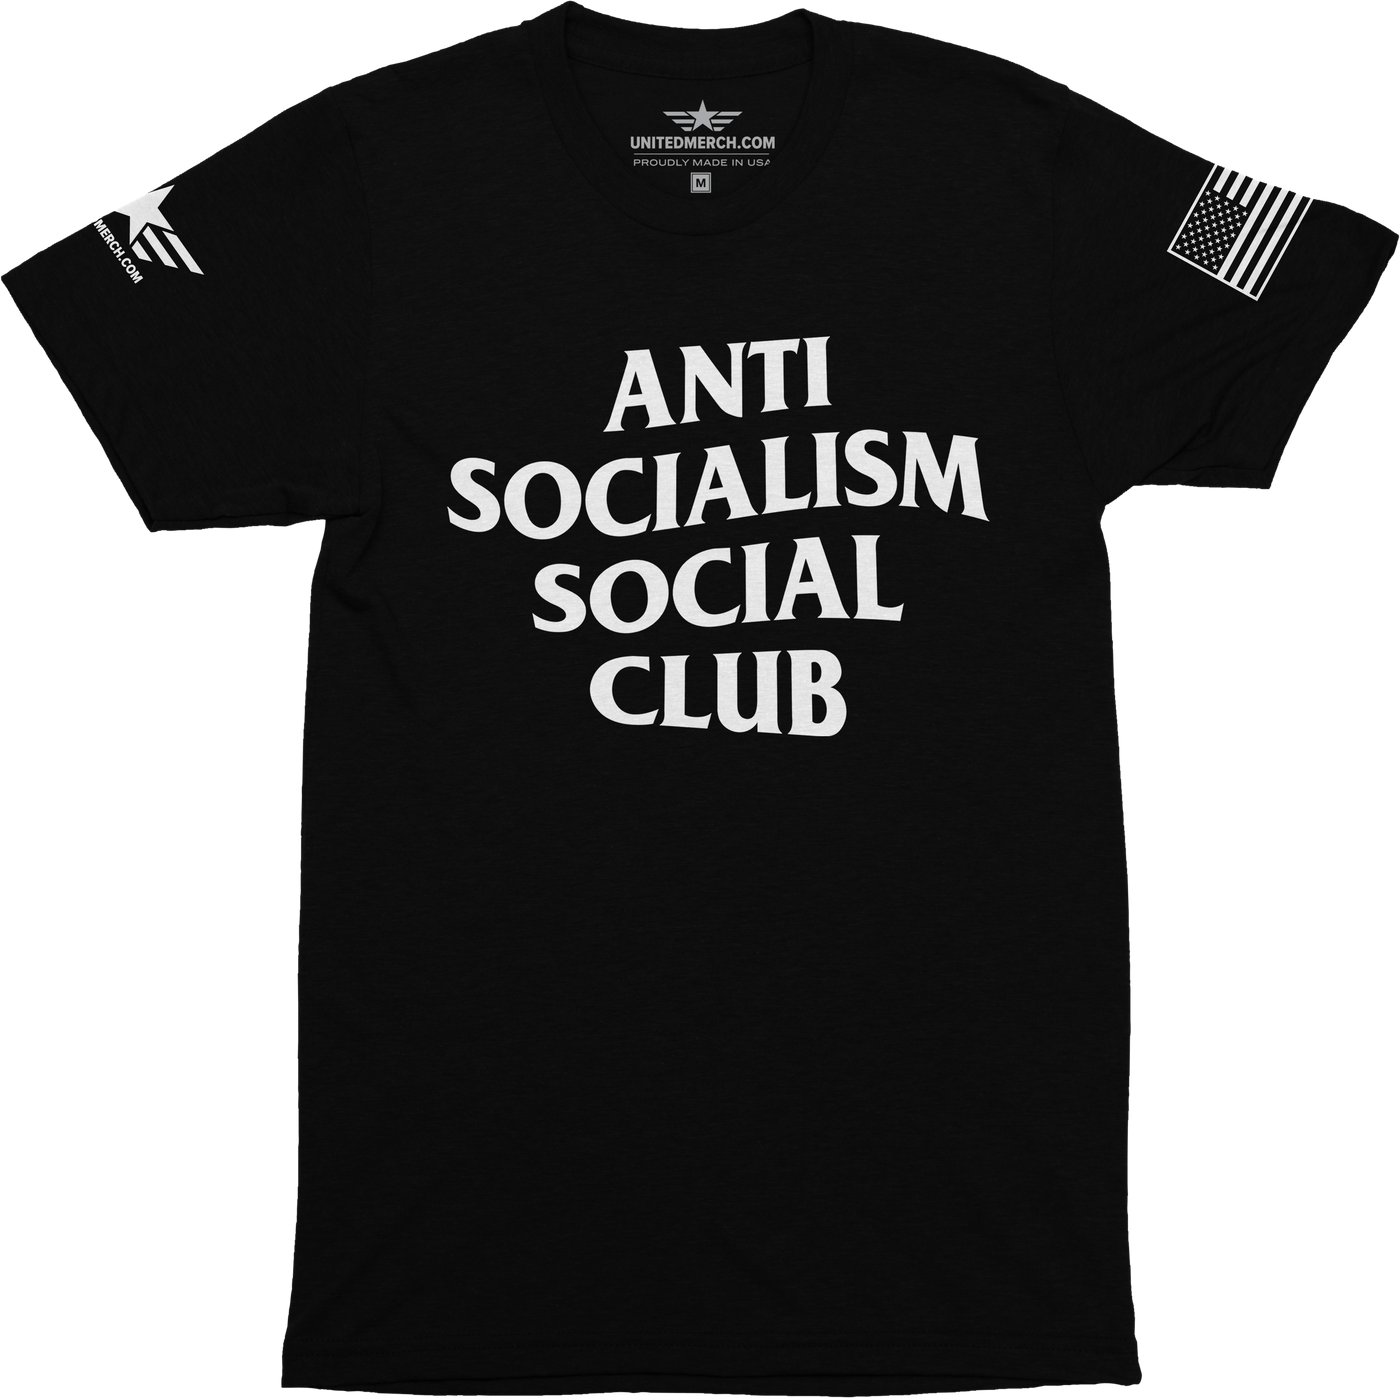 Anti-Socialism Social Club Tee